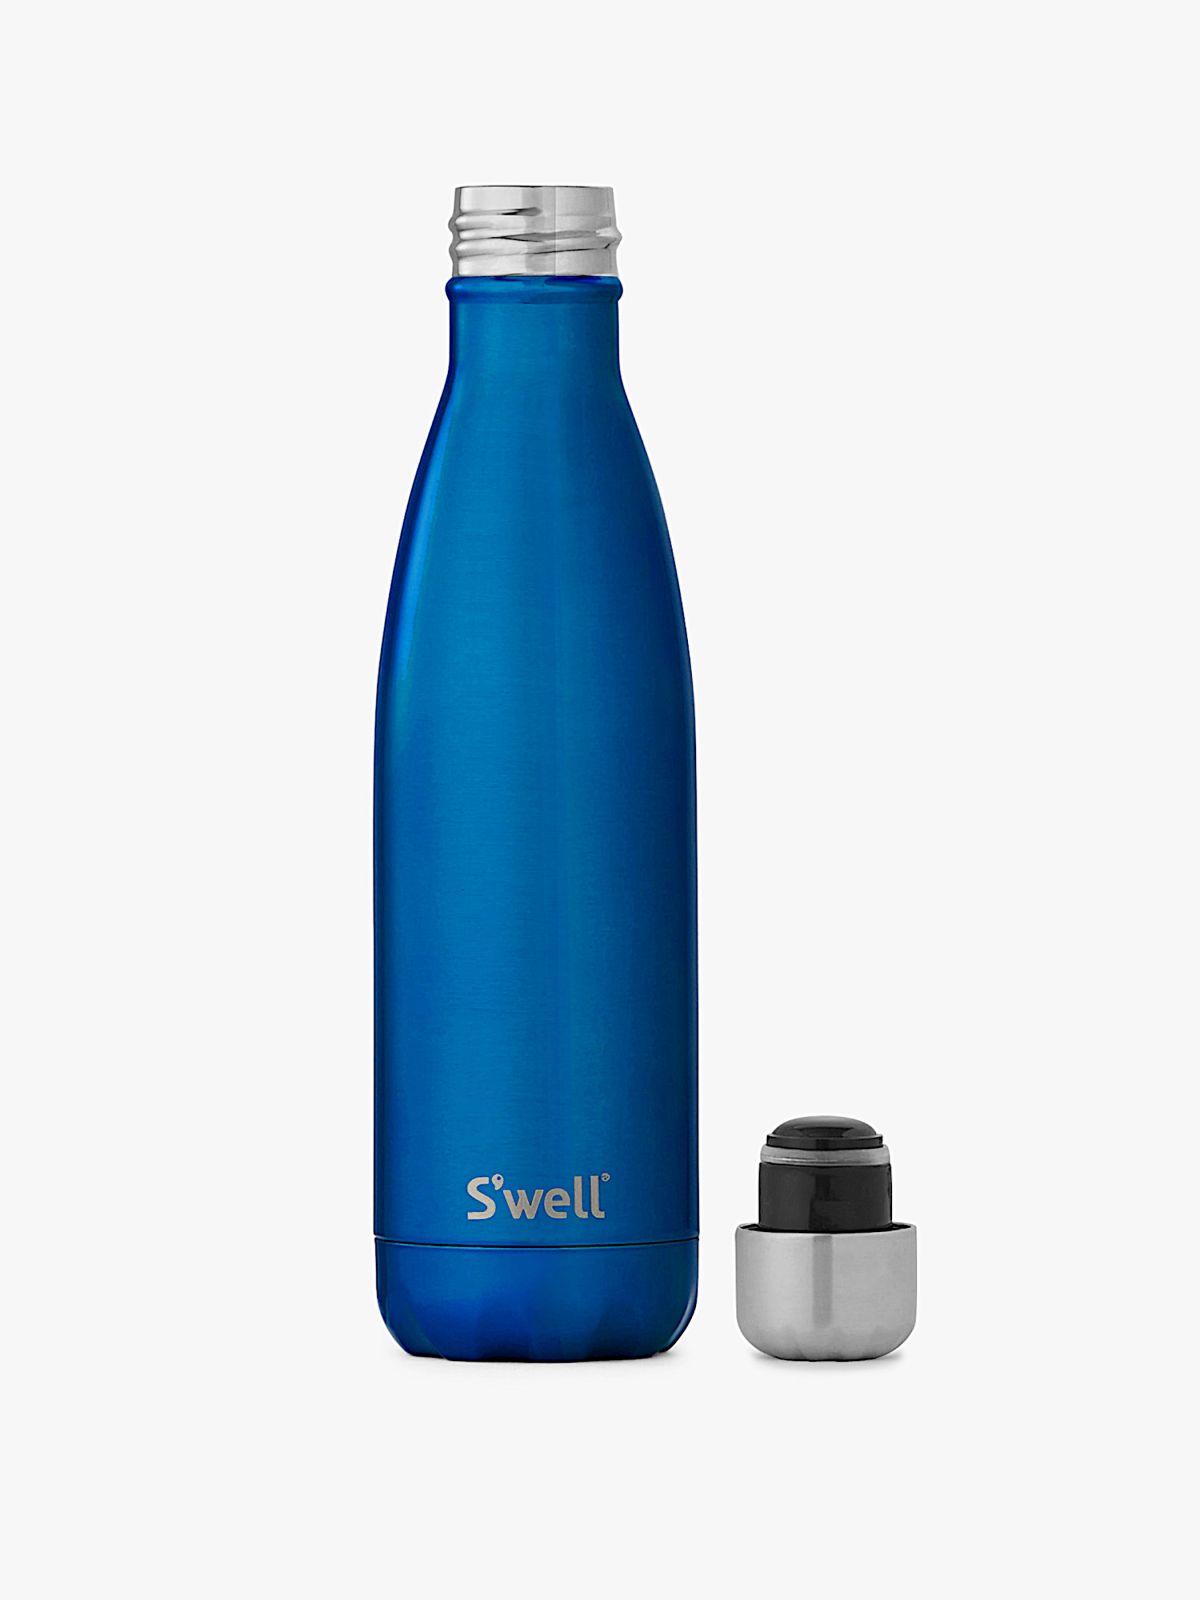  בקבוק תרמי עם לוגו של SWELL